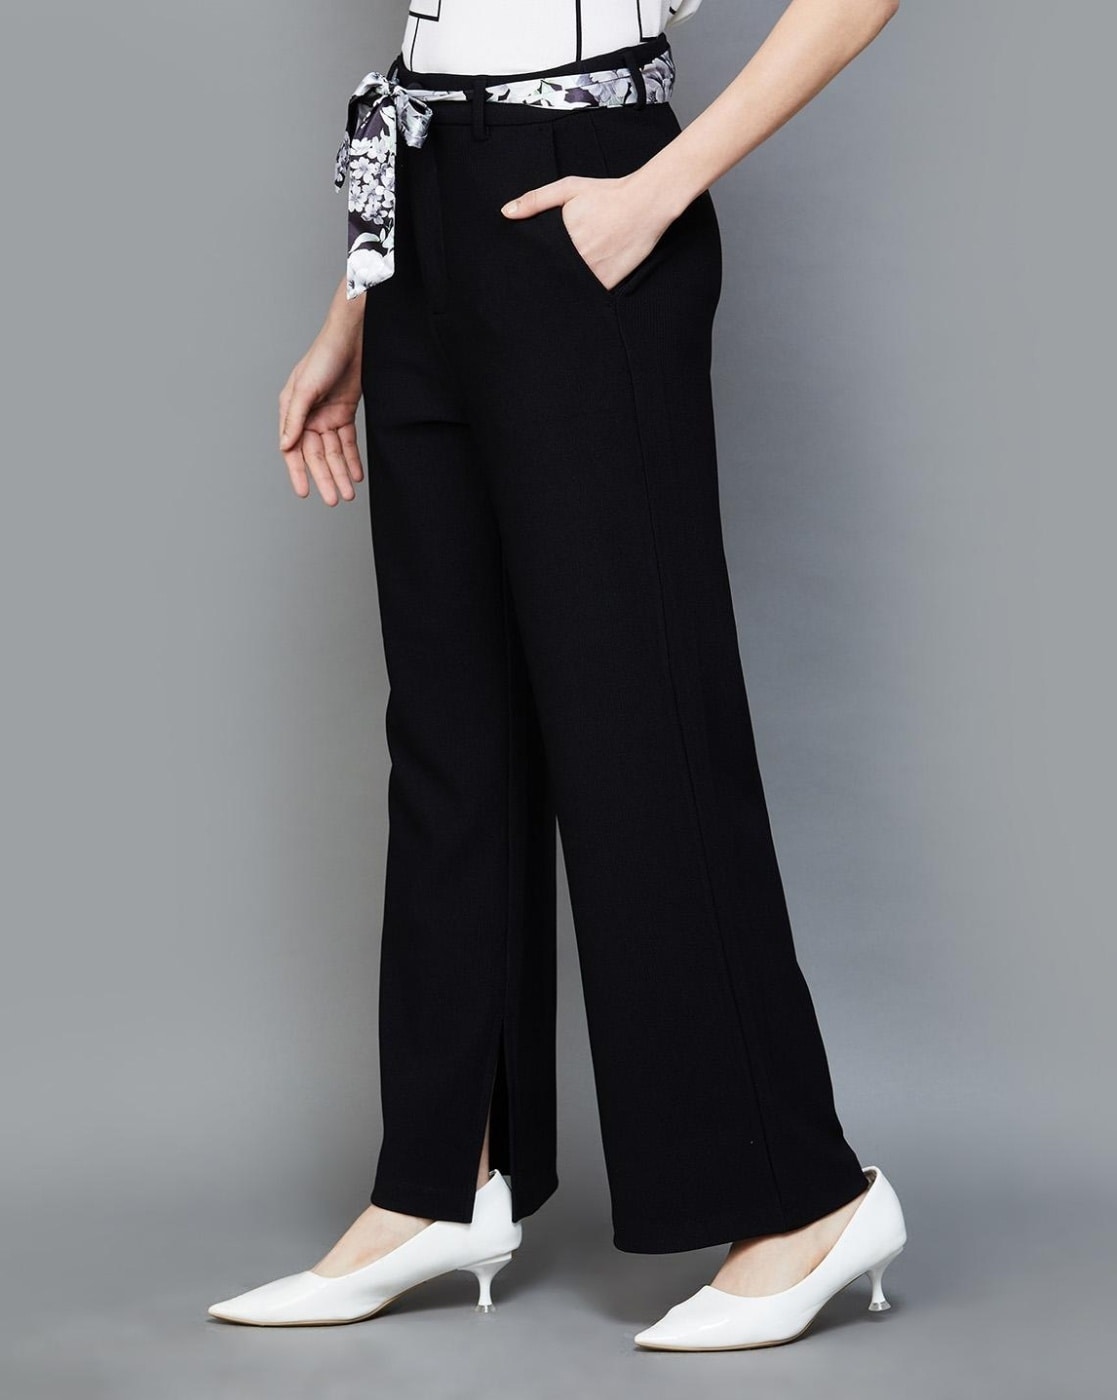 Black Formal Women's Pants & Trousers - Macy's